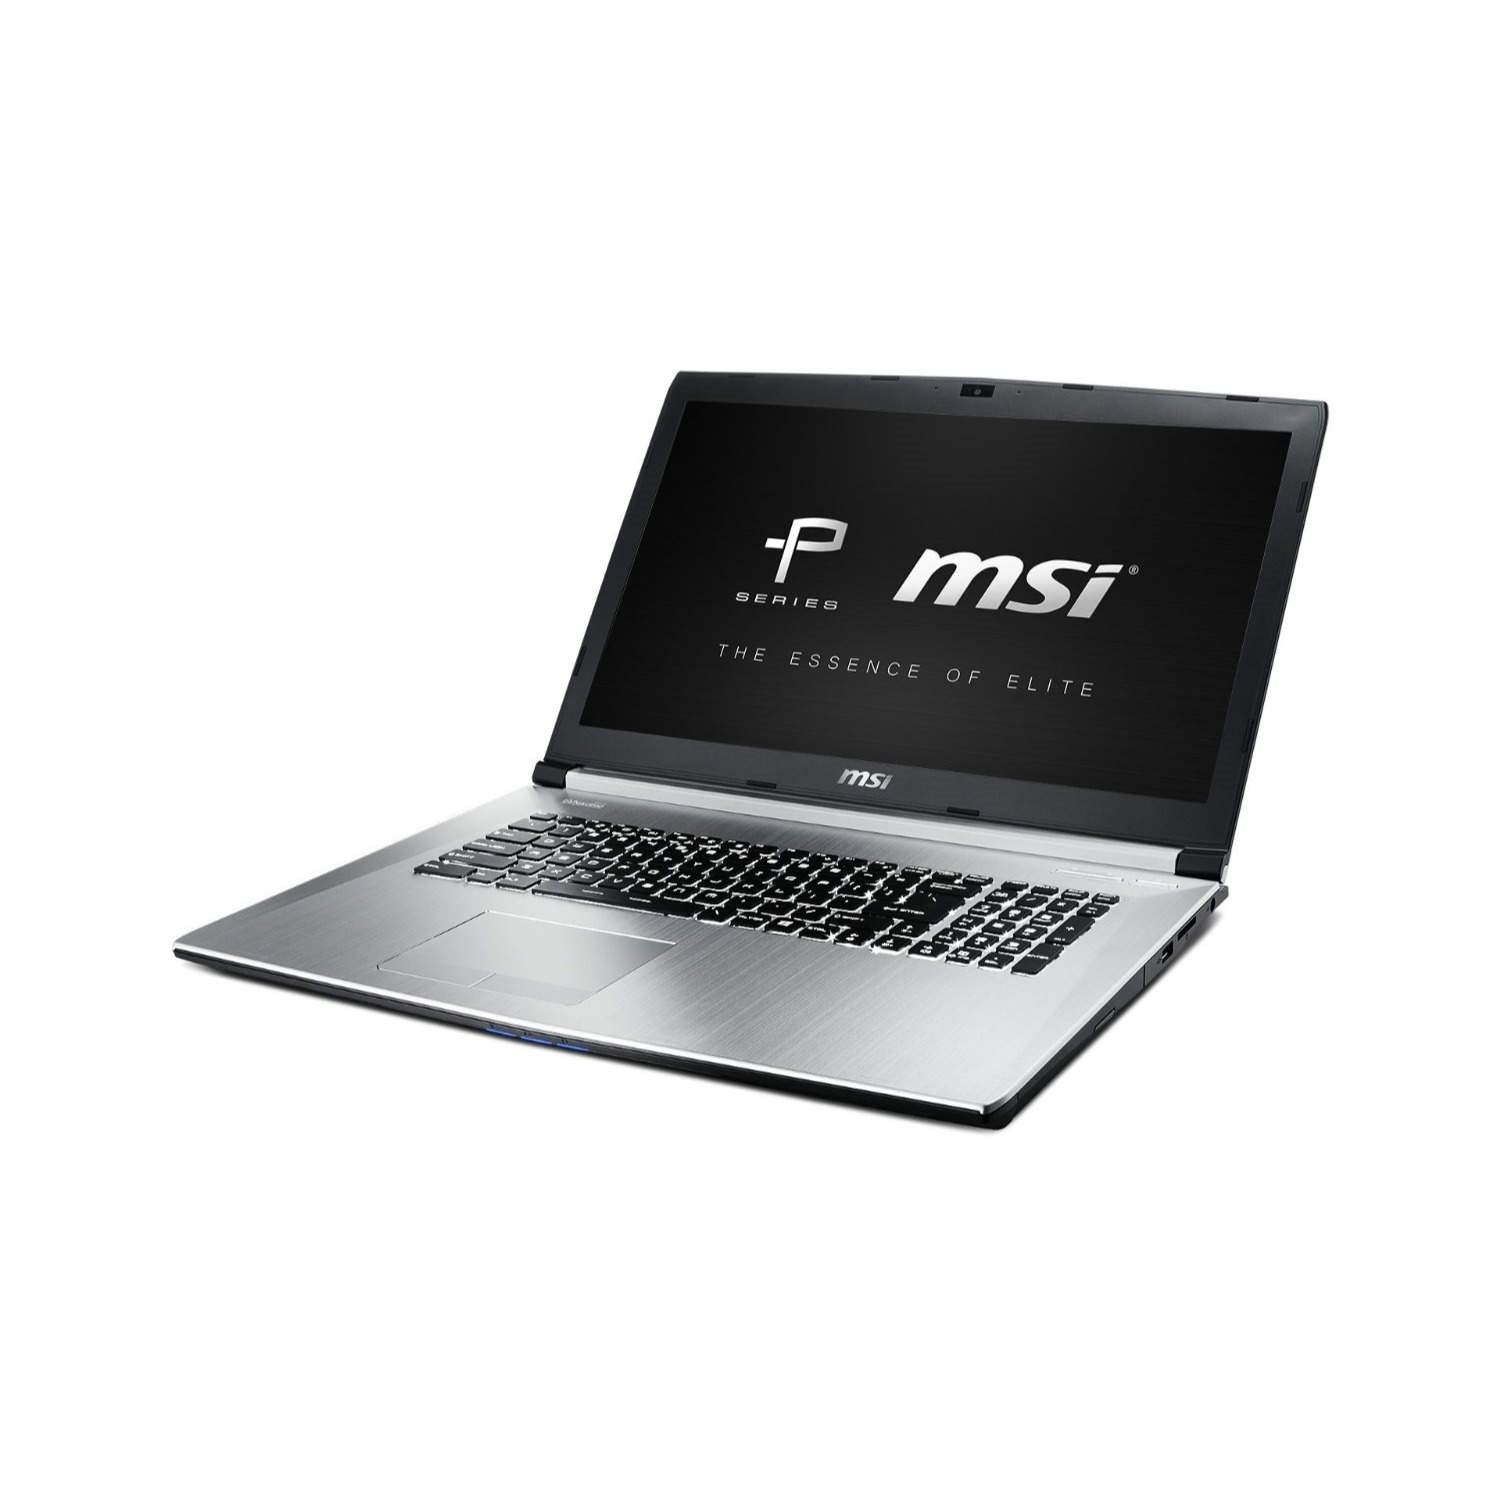 Mis Pe70 2qe Prestige Core I7 5700hq 8gb 1tb Nvidia Gtx 960m 2gb Dvdrw 17 3 Windows 8 1 Laptop Laptops Direct